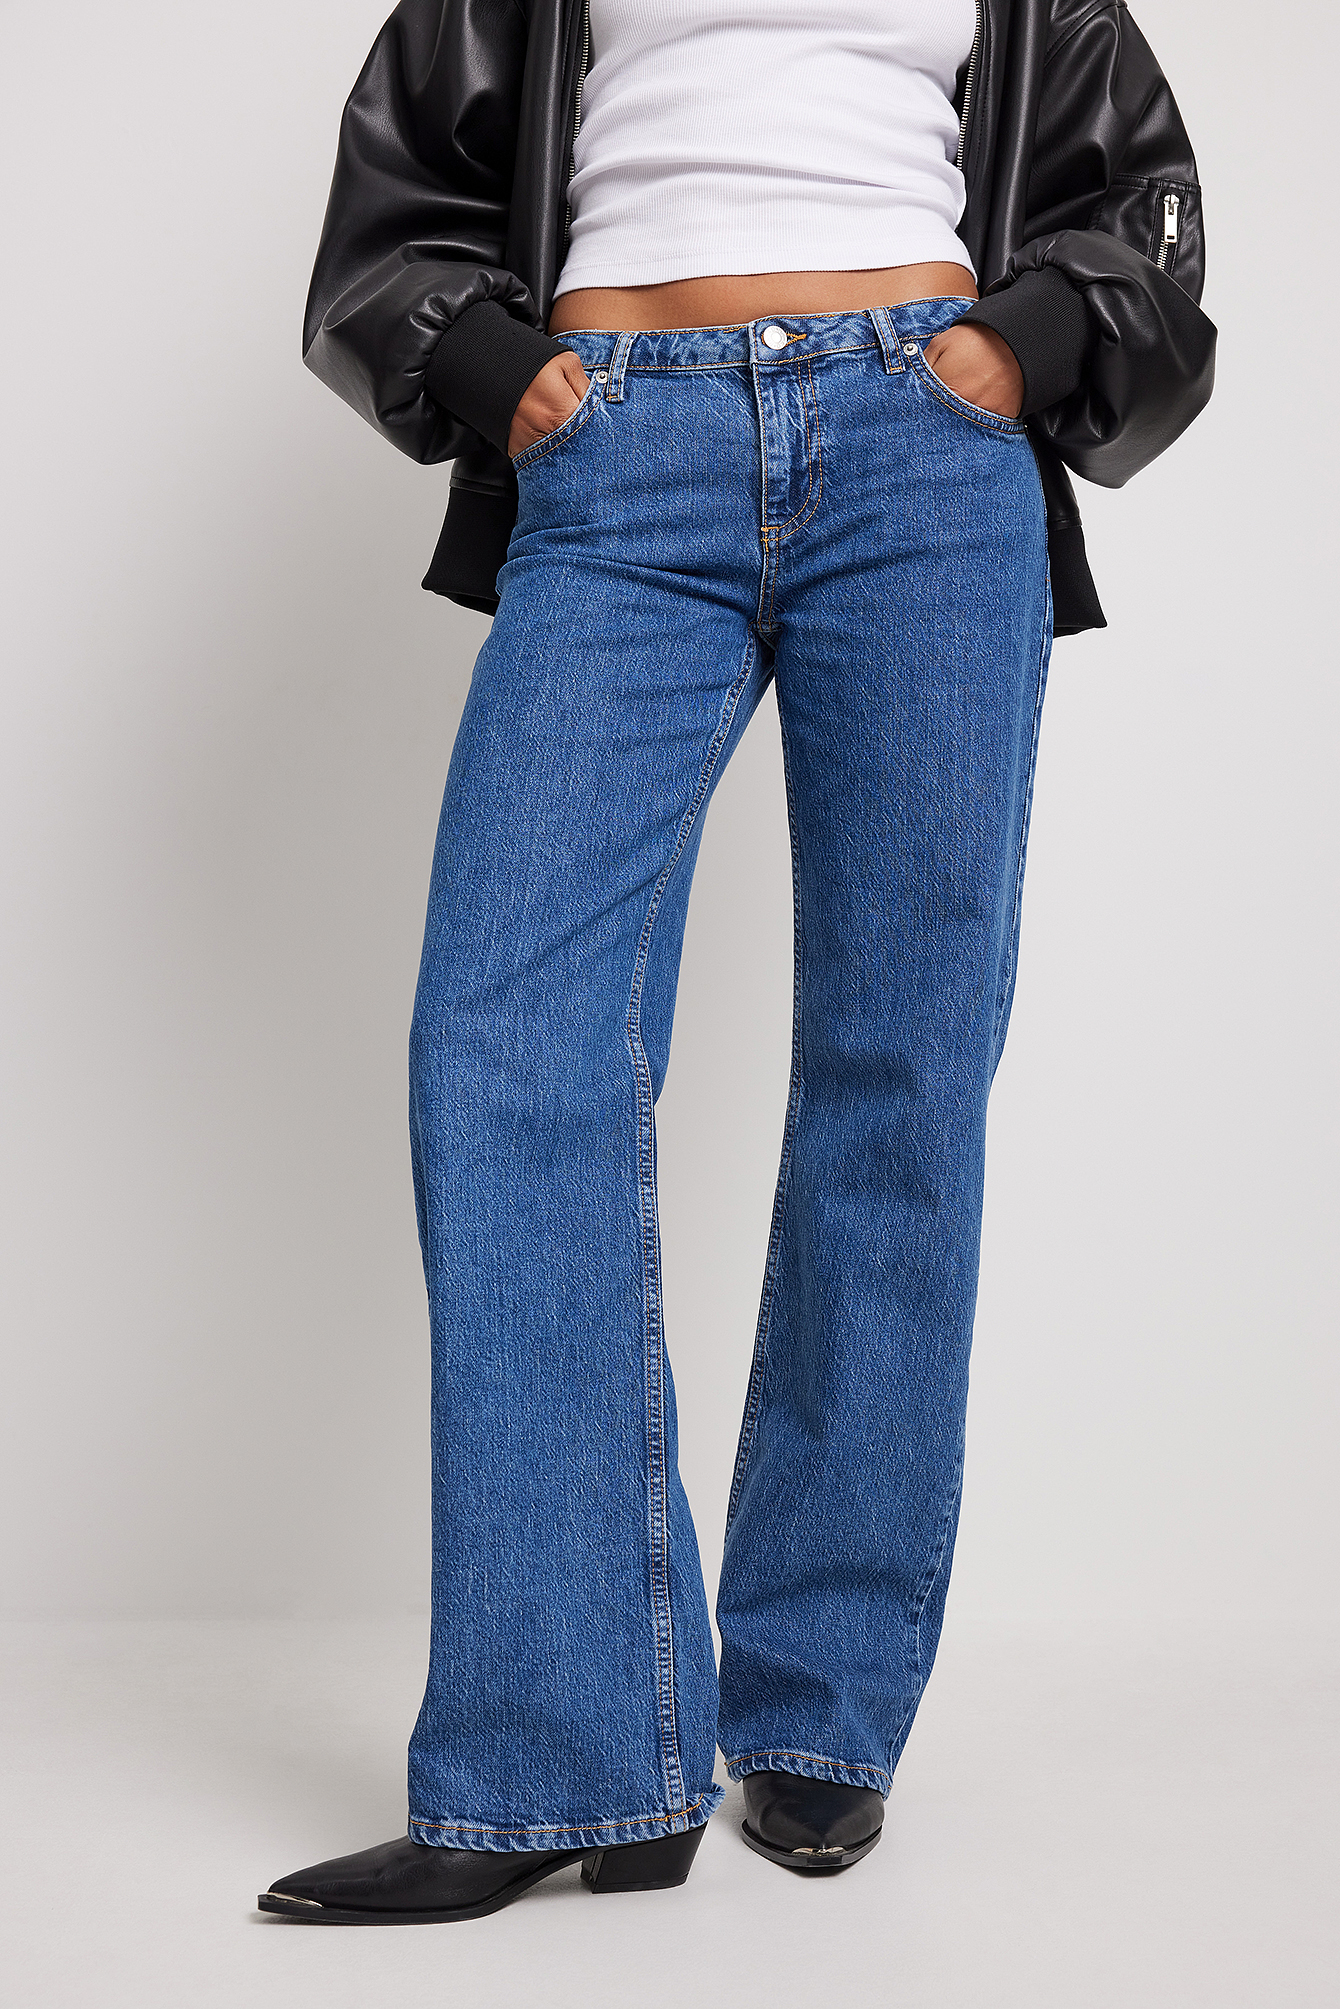 34L Amazon Dames Kleding Broeken & Jeans Jeans Low Waisted Jeans Arc 3D Low Waist Boyfriend Jeans voor Dames 27W 